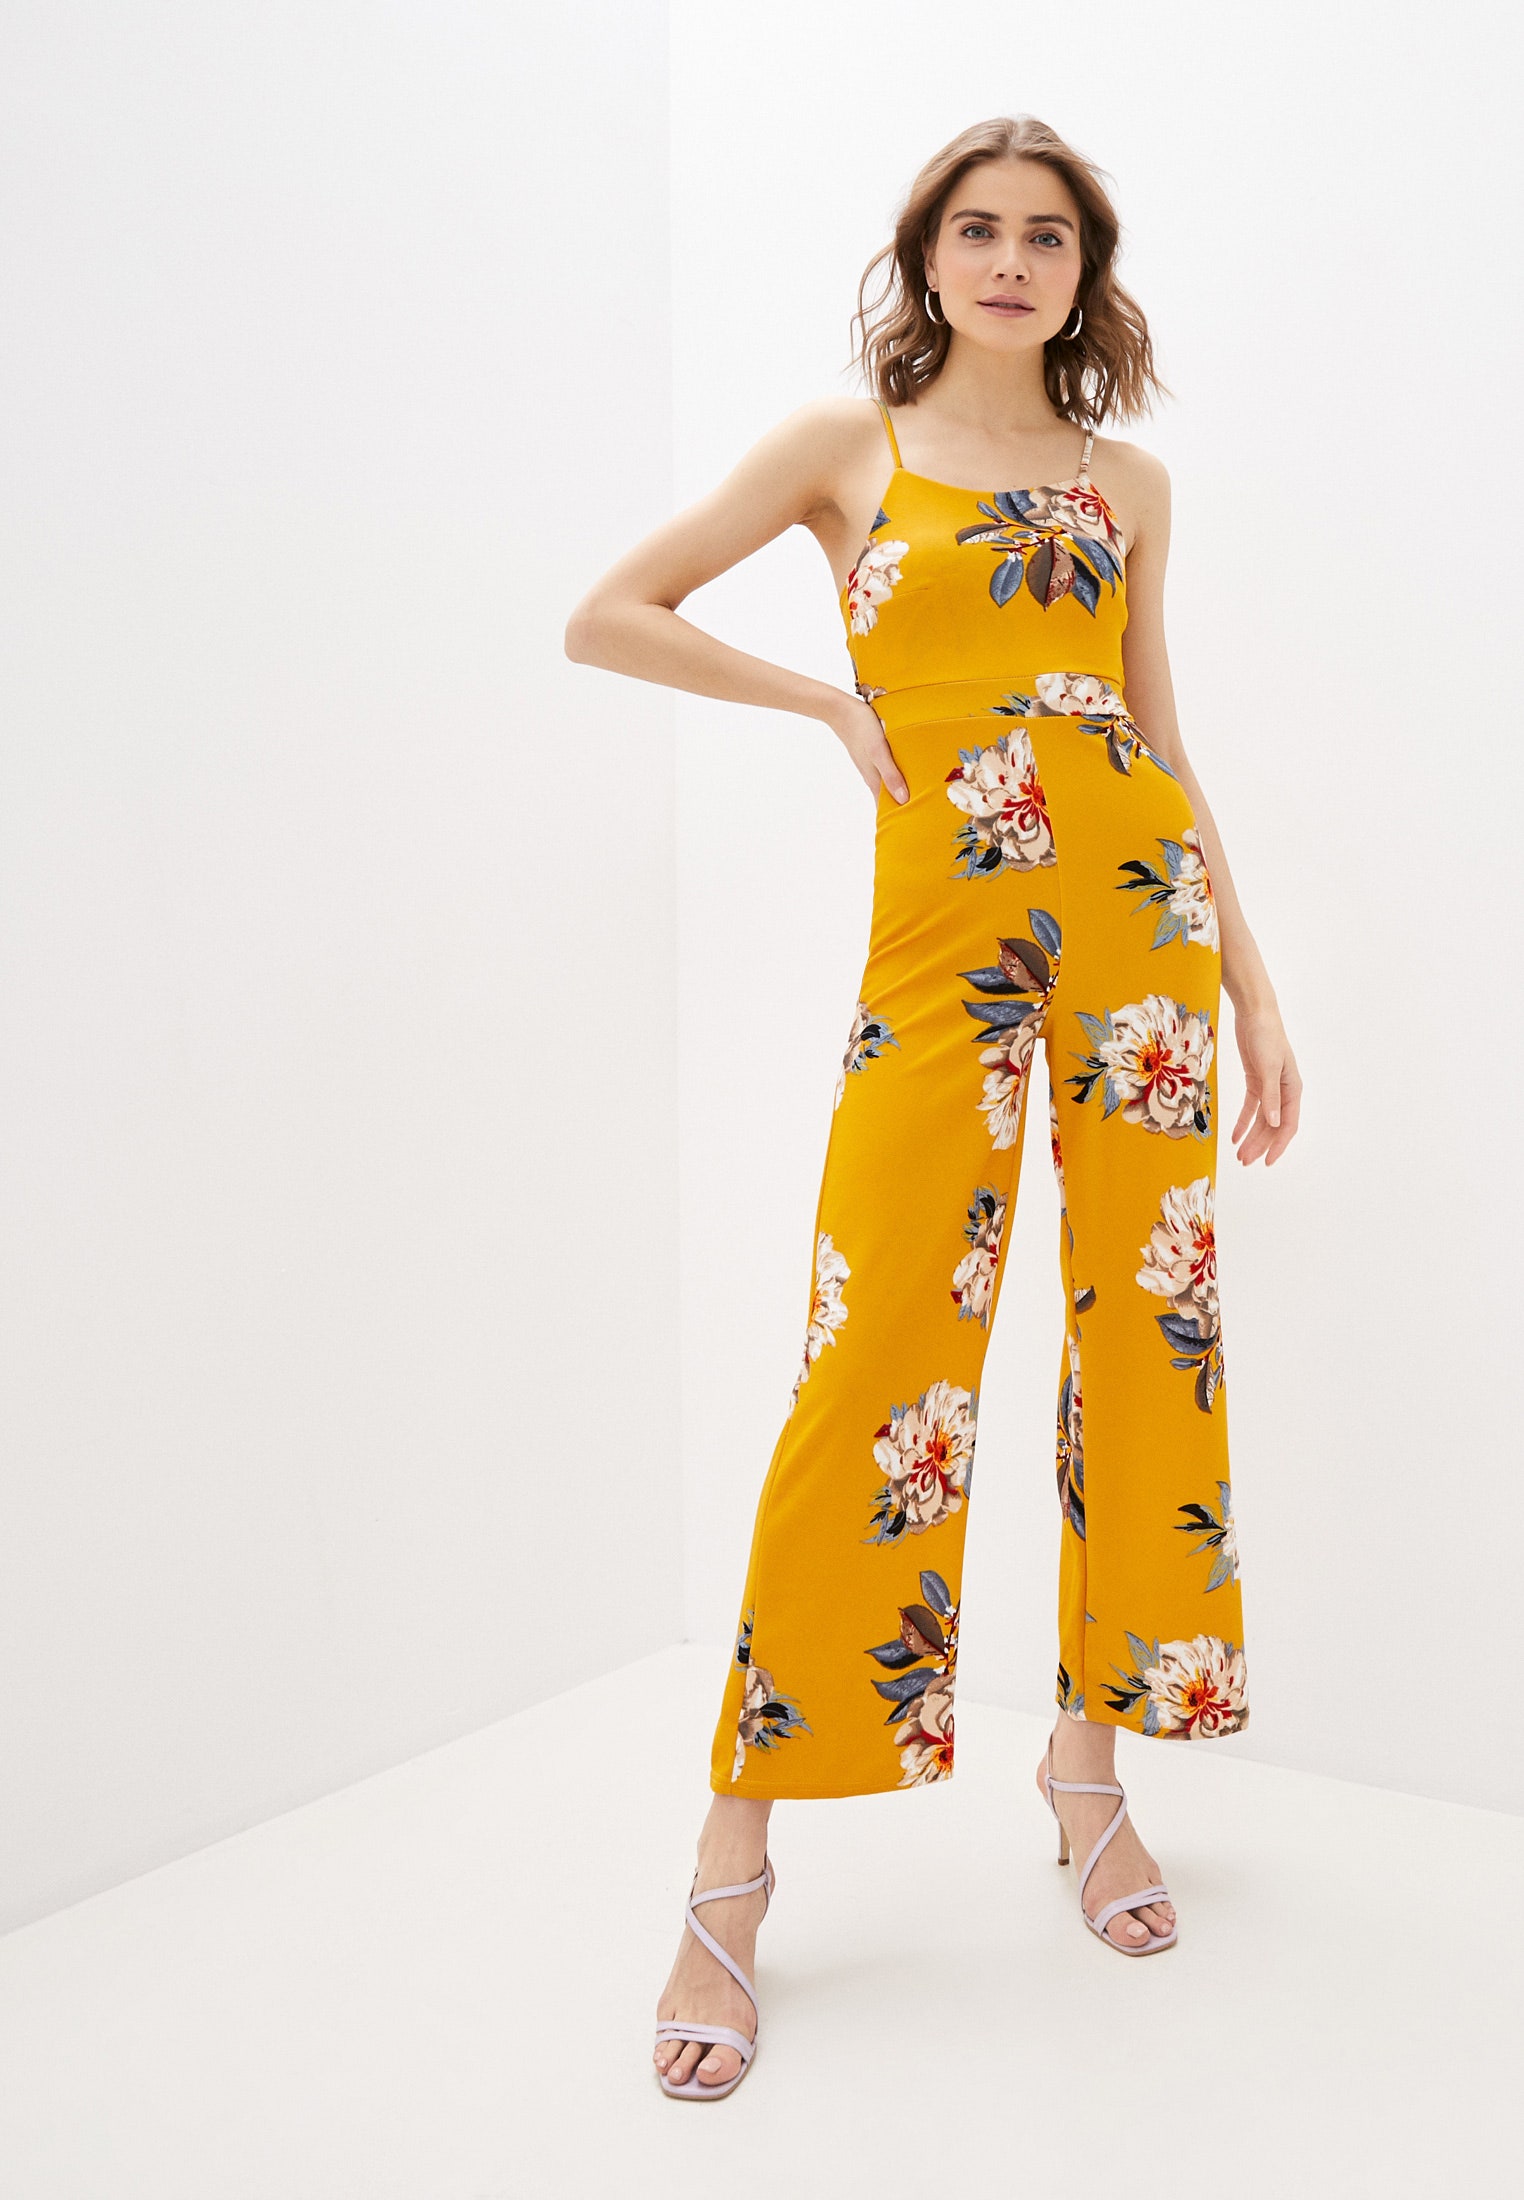 Модная цветотерапия этой весной носите яркие комбинезоны как Хайди Клум